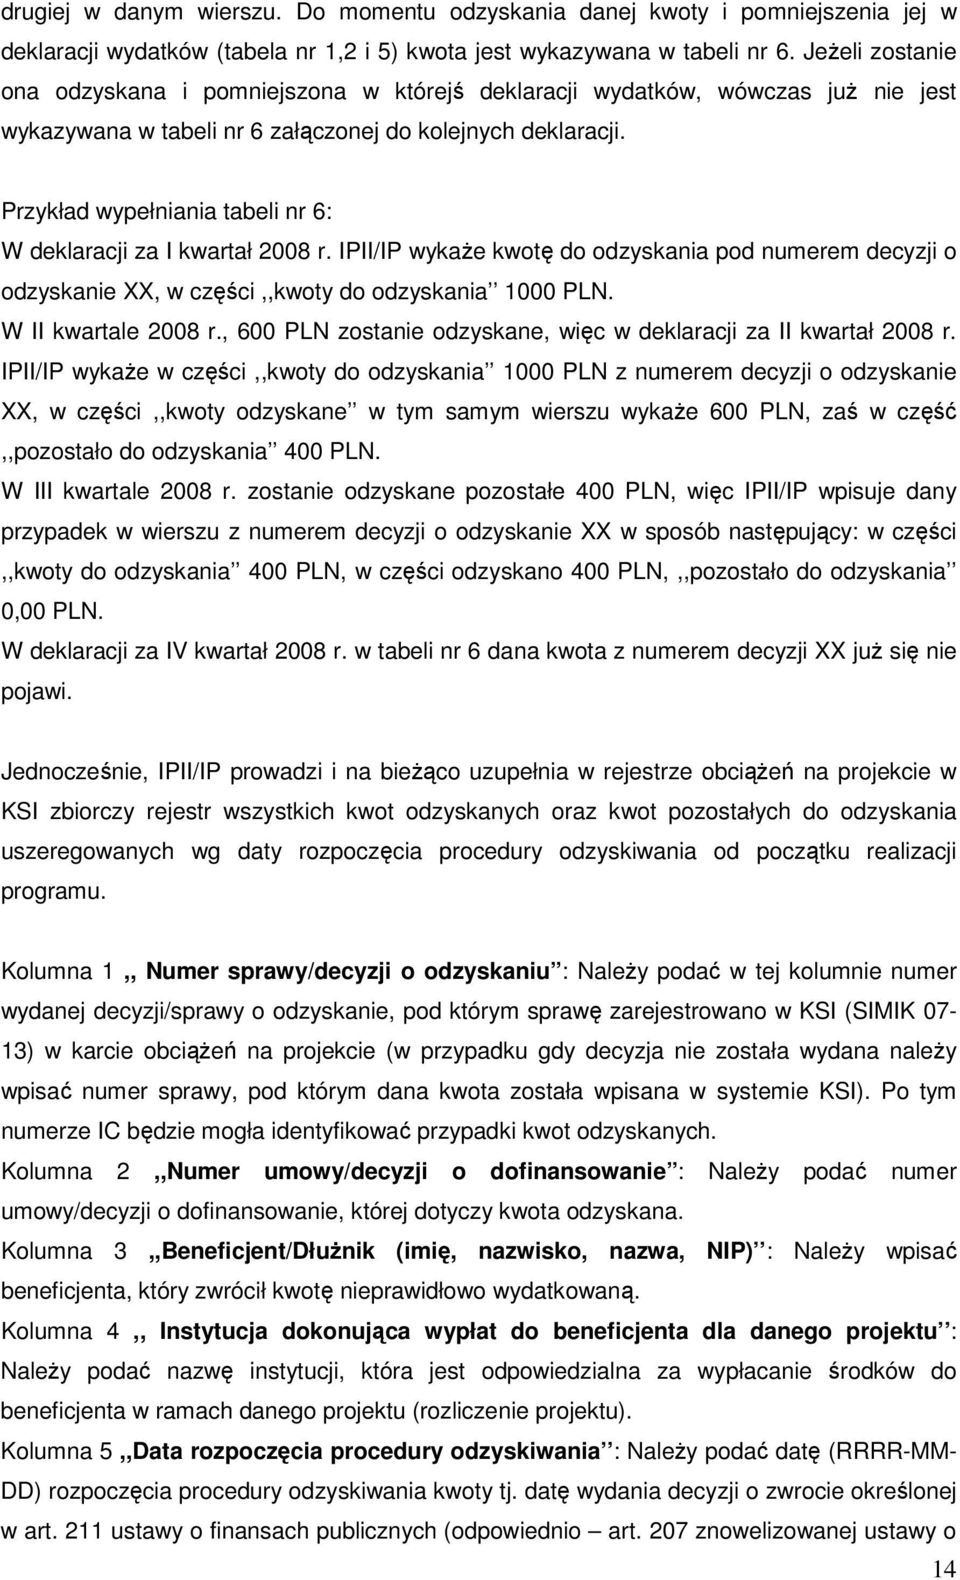 Przykład wypełniania tabeli nr 6: W deklaracji za I kwartał 2008 r. IPII/IP wykaŝe kwotę do odzyskania pod numerem decyzji o odzyskanie XX, w części,,kwoty do odzyskania 1000 PLN.